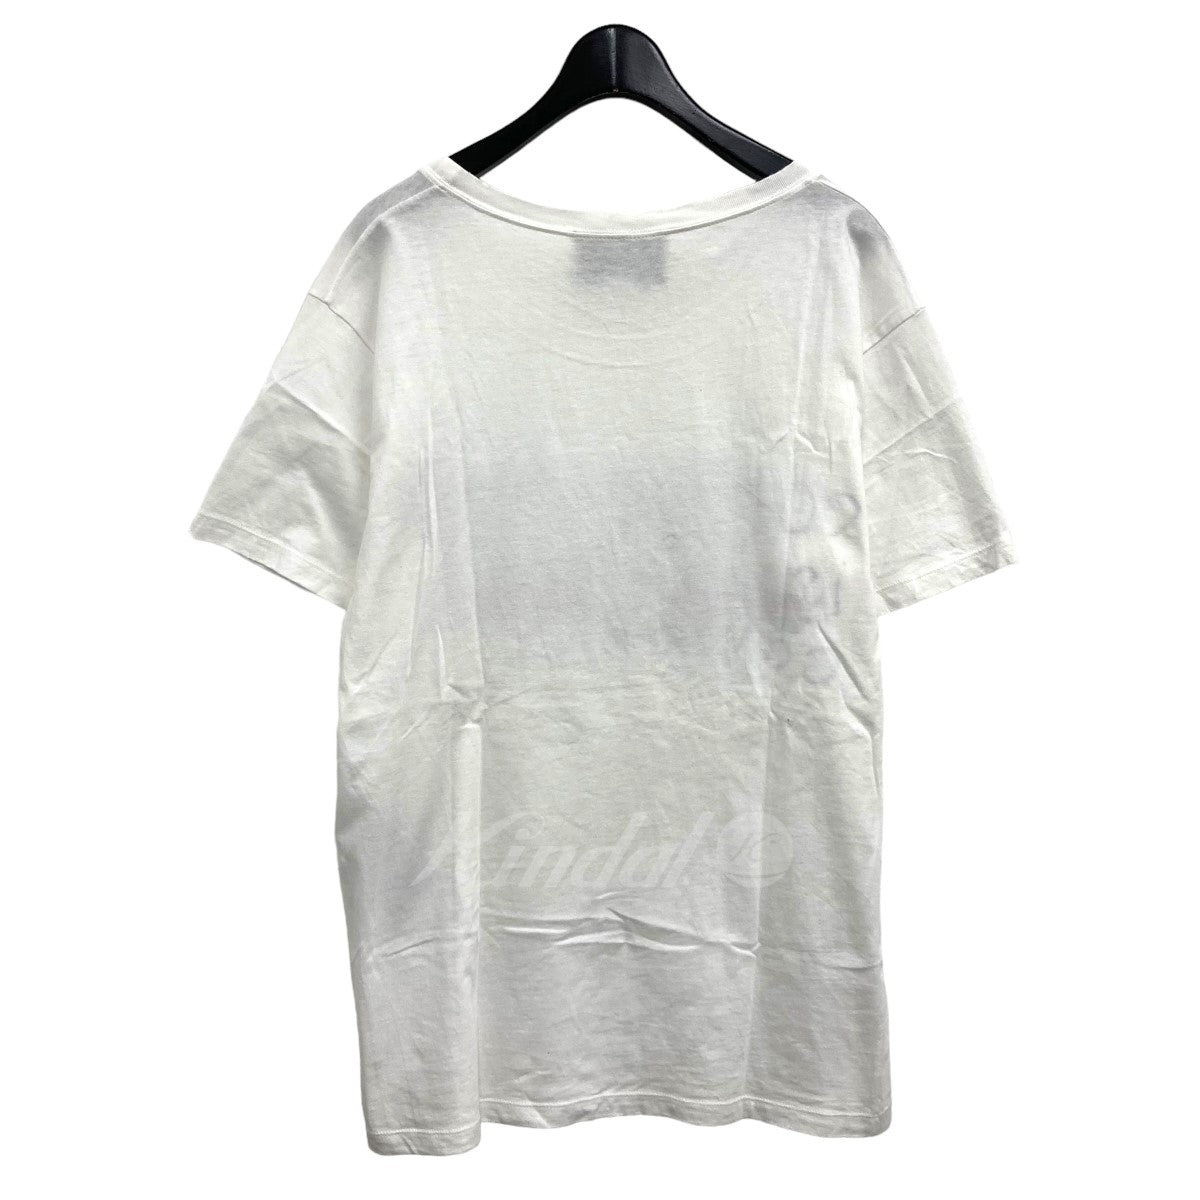 GUCCI(グッチ) ココキャピタンロゴTシャツ 493117 ホワイト サイズ 13 